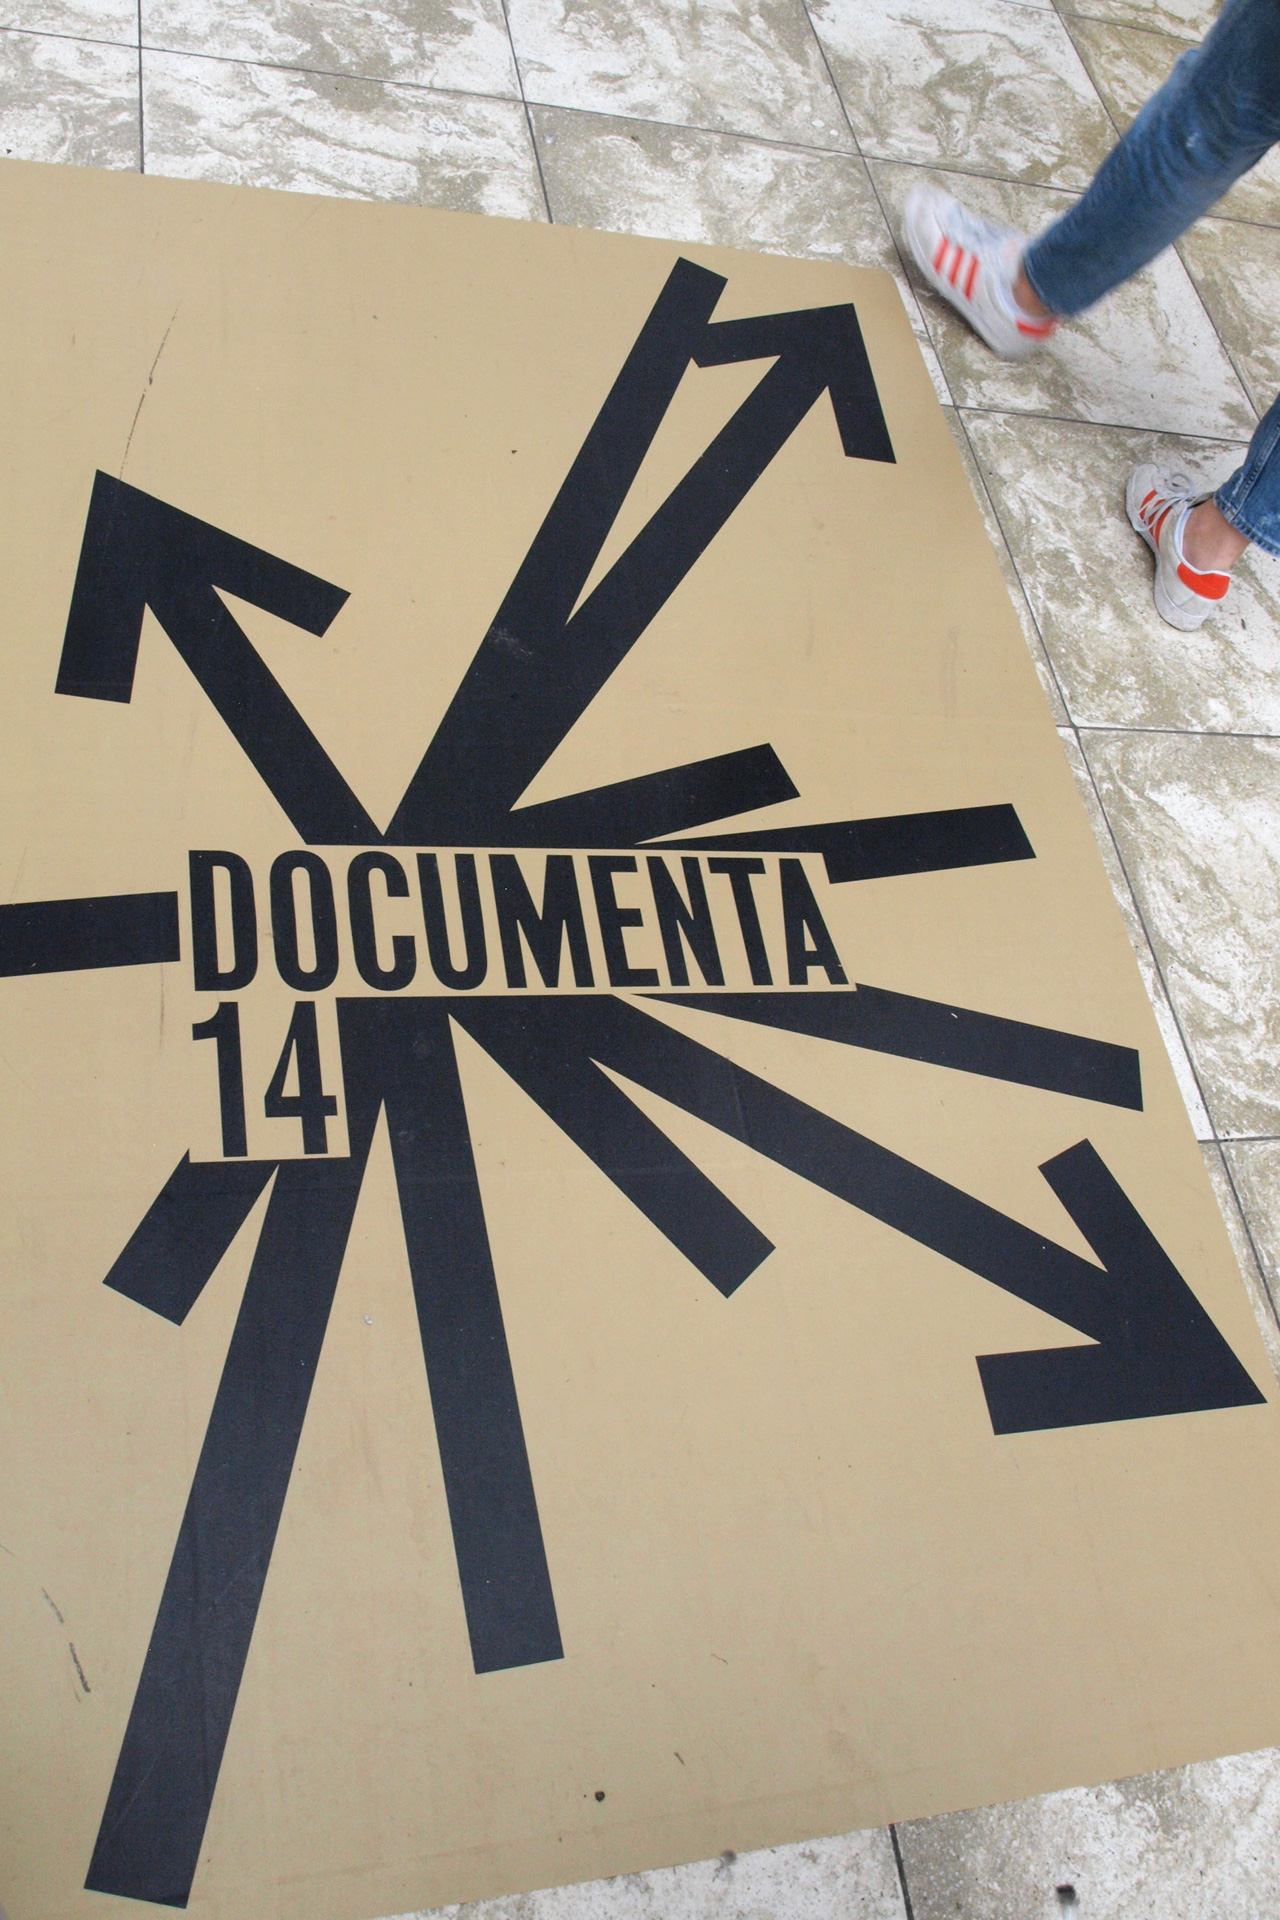 buchstaben...plus zu Besuch bei der documenta 14